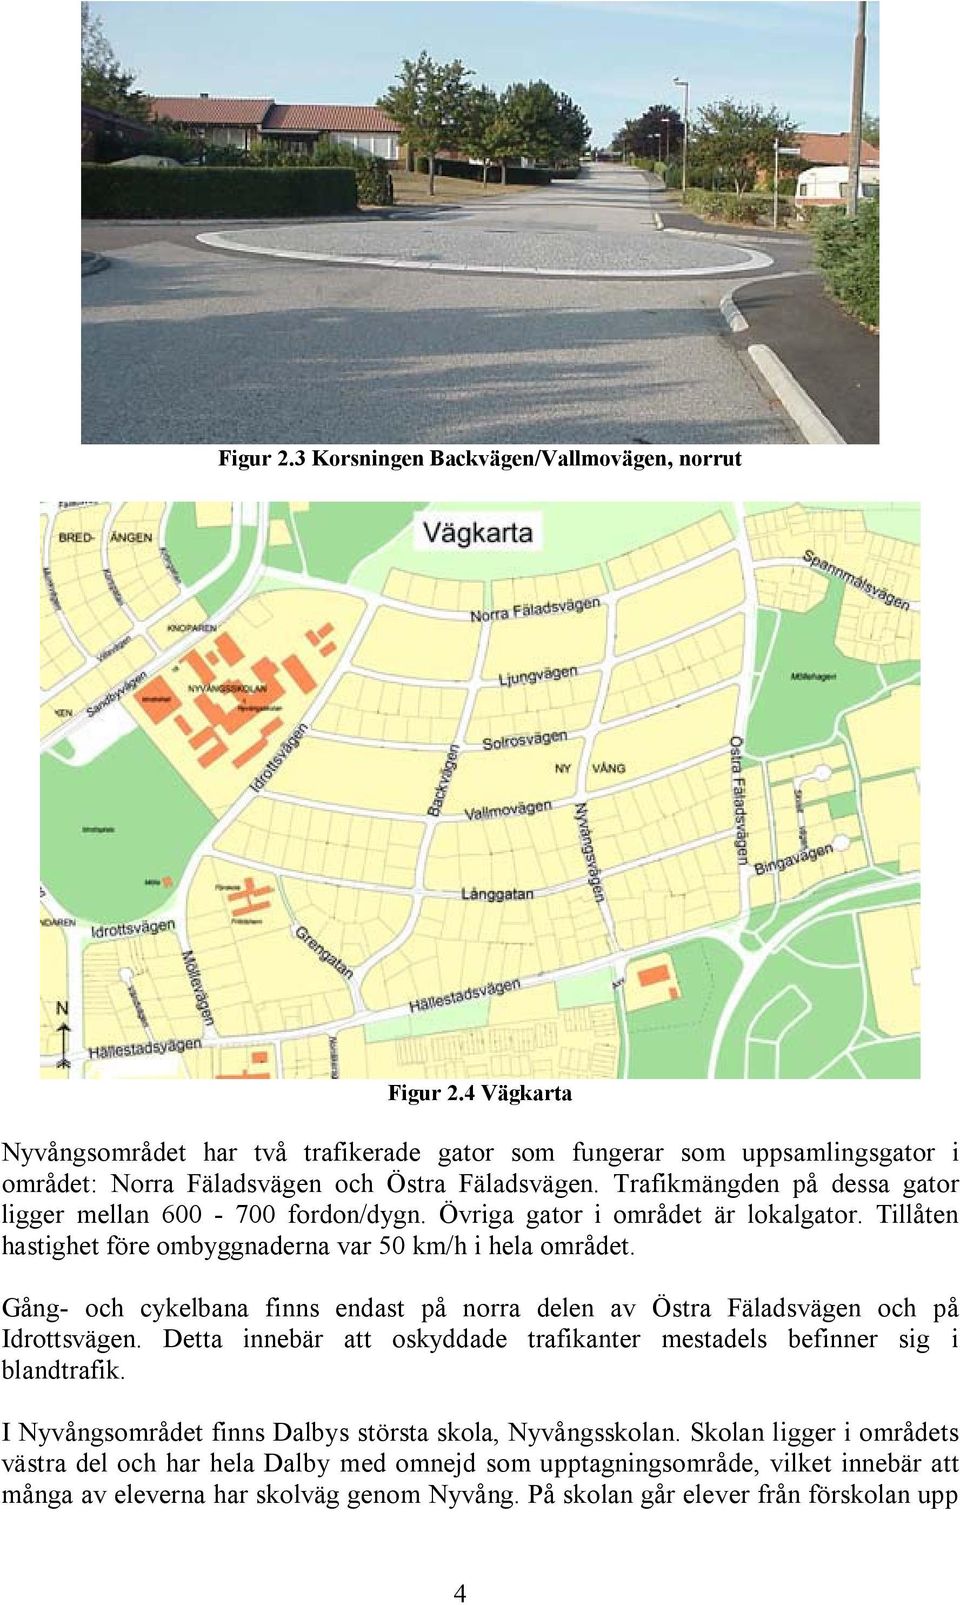 Gång- och cykelbana finns endast på norra delen av Östra Fäladsvägen och på Idrottsvägen. Detta innebär att oskyddade trafikanter mestadels befinner sig i blandtrafik.